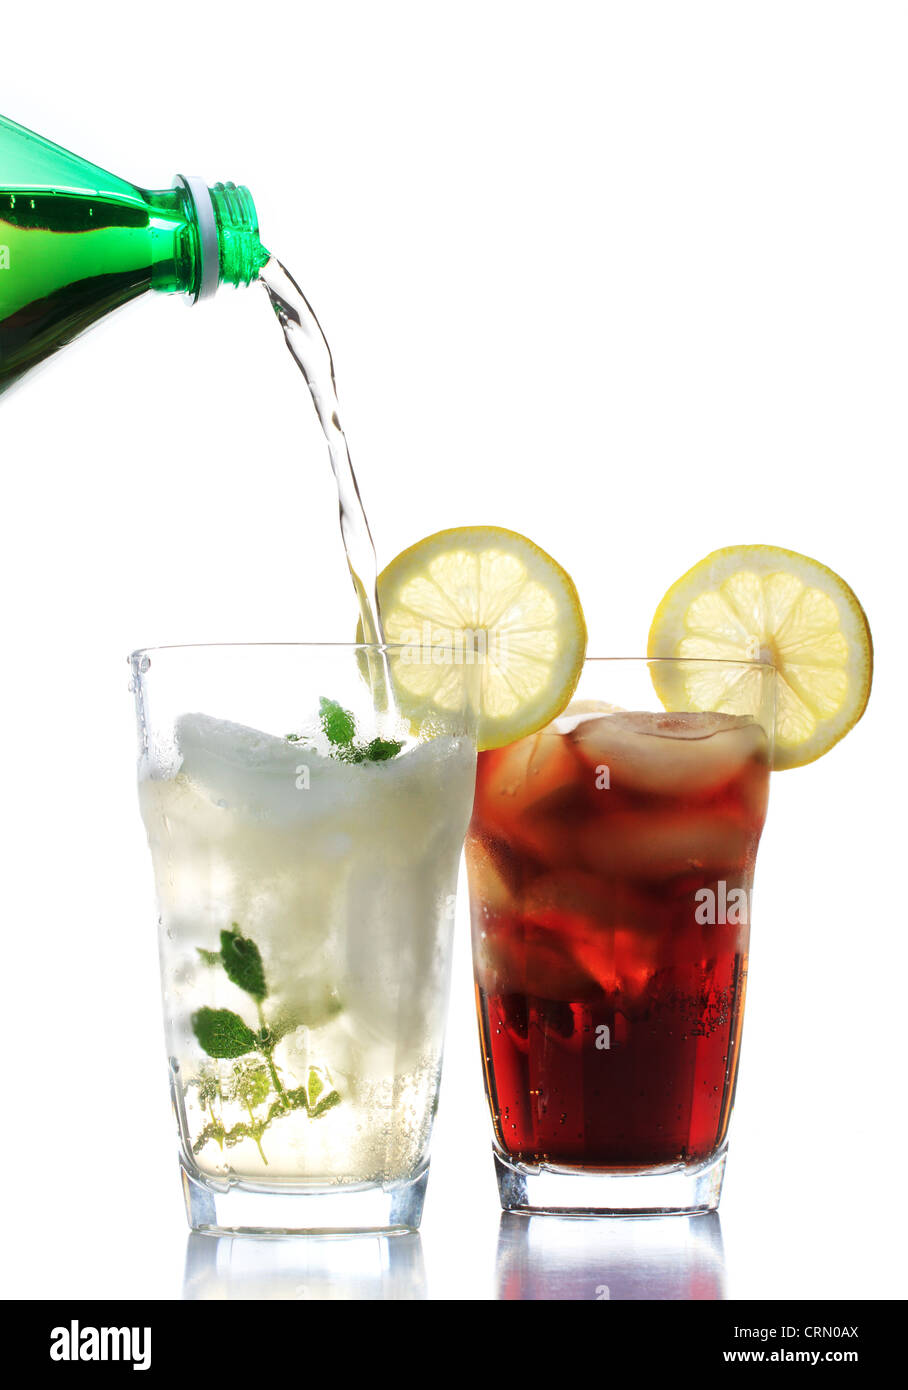 Le soda au gingembre et le cola dans les verres avec garniture au citron Banque D'Images